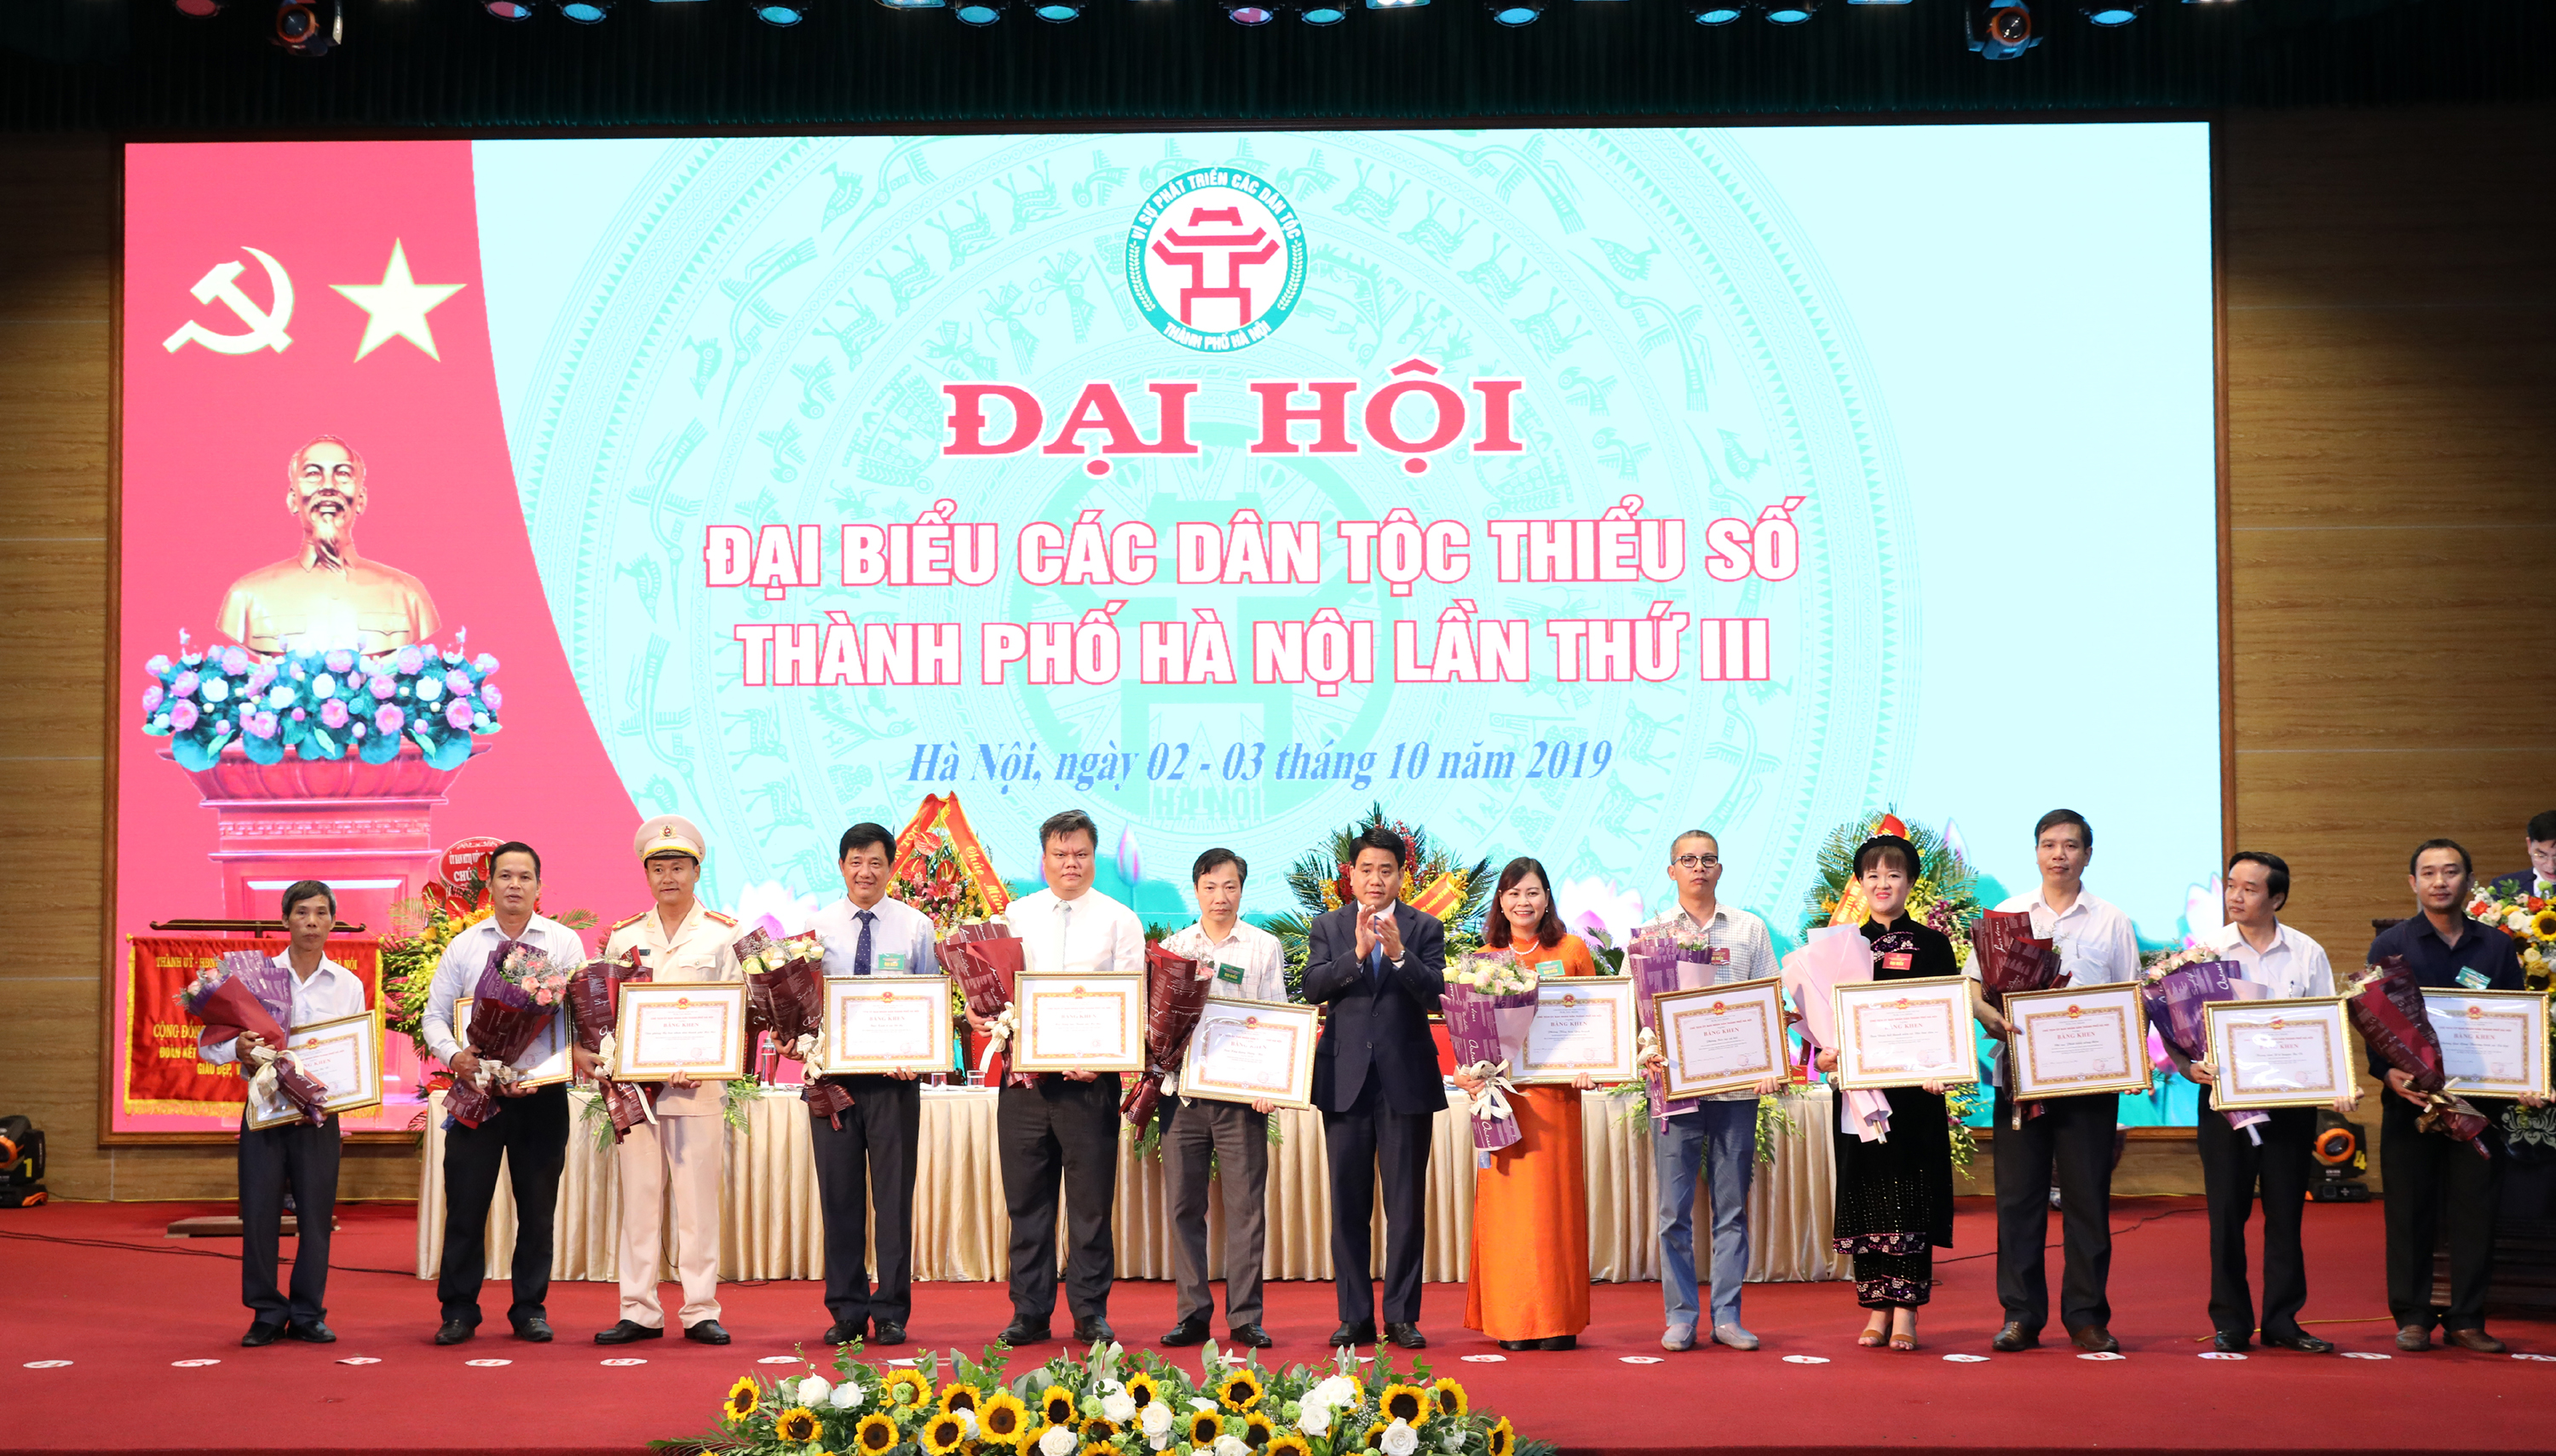 Chủ tịch UBND TP. Hà Nội Nguyễn Đức Chung tặng Bằng khen cho các cá nhân có thành tích xuất sắc tại Đại hội